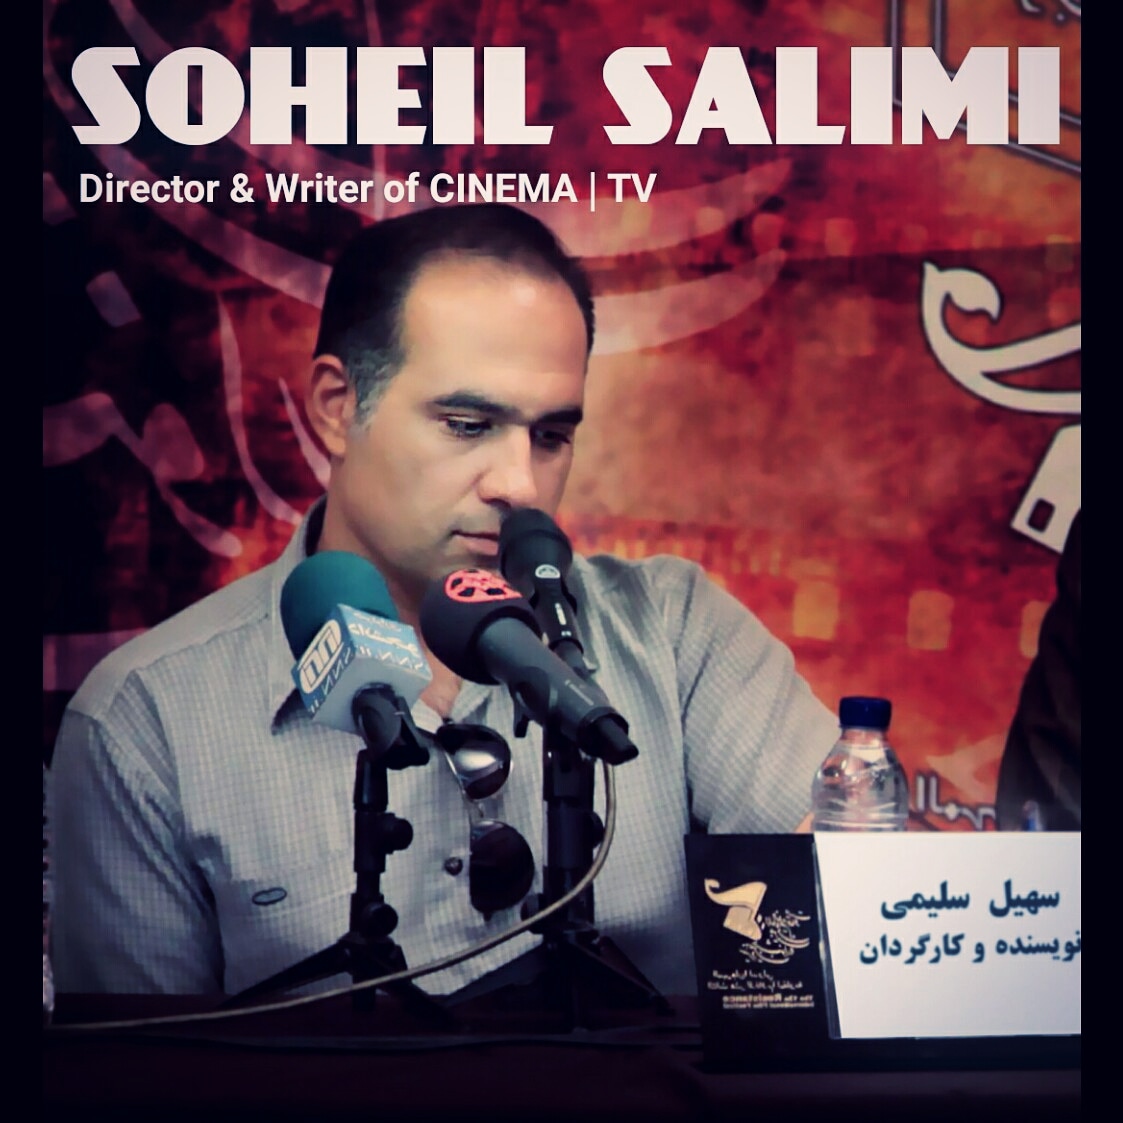 تصویری از سهیل سلیمی، کارگردان و نویسنده سینما و تلویزیون در حال بازیگری سر صحنه یکی از آثارش